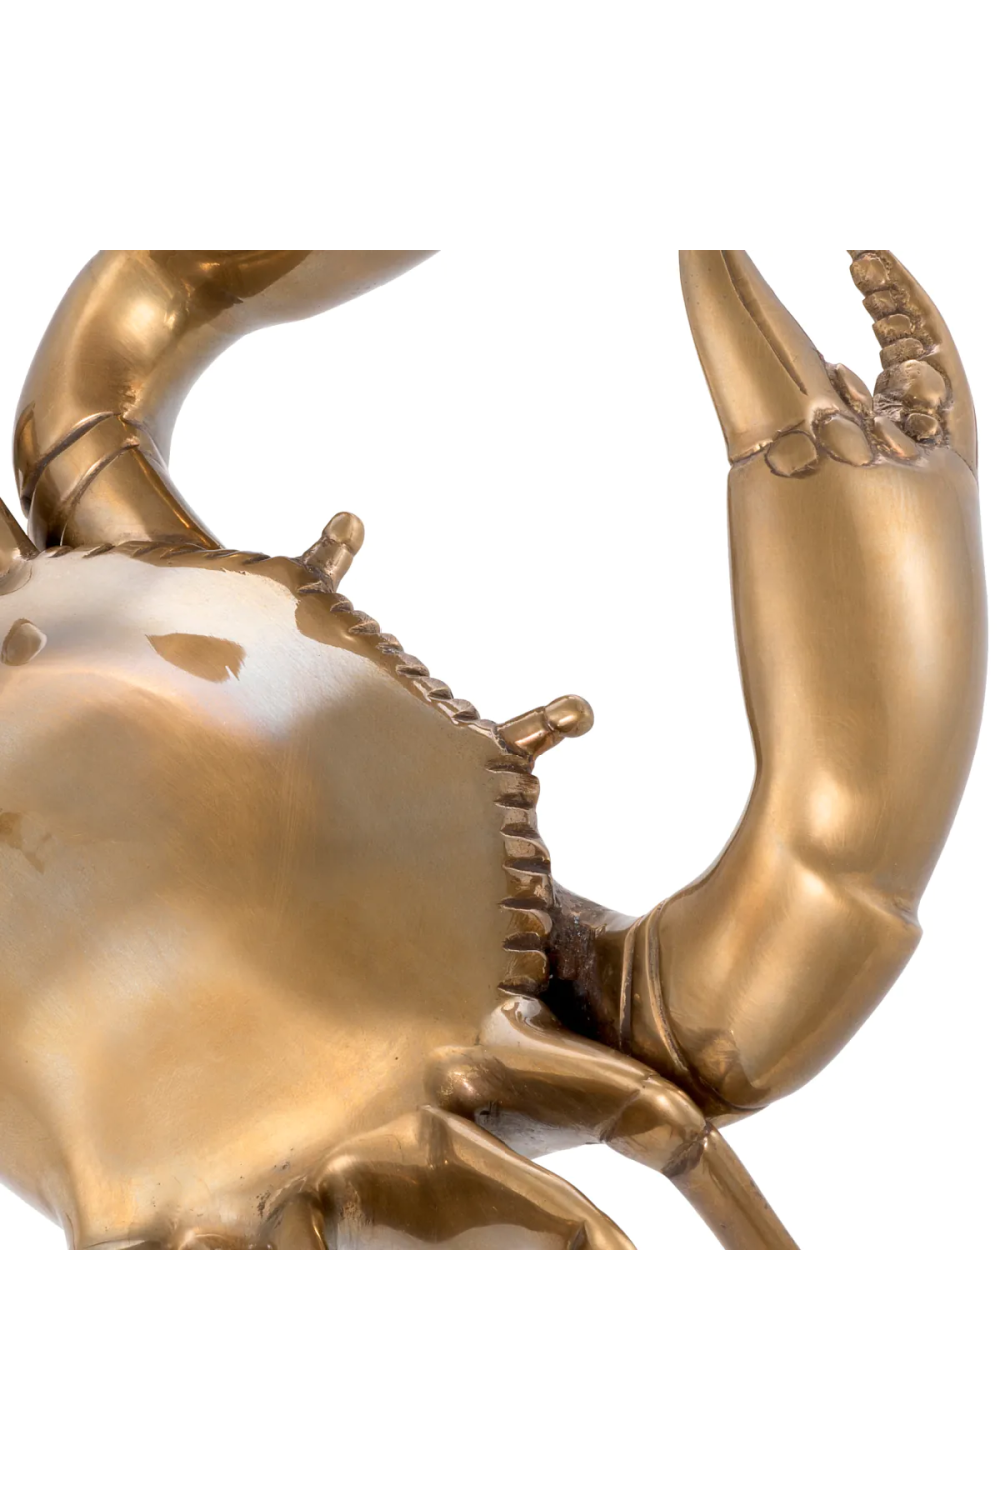 Vintage Brass Deco Object | Eichholtz Crab | Oroa.com